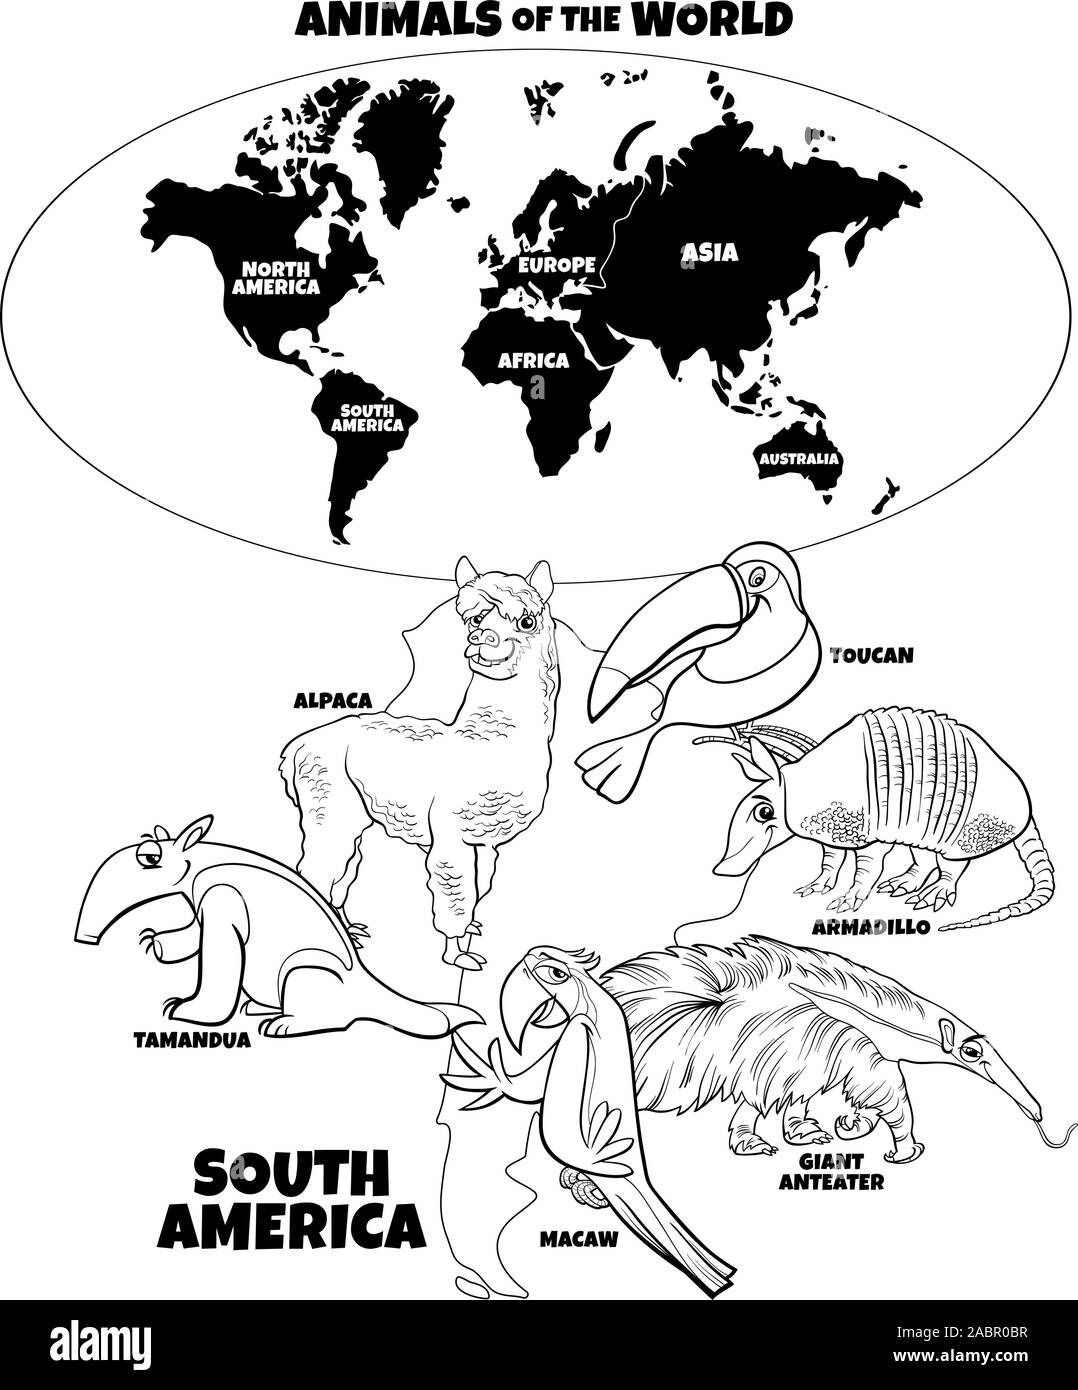 Schwarze und Weiße pädagogische Cartoon Illustration der Südamerikanischen Tiere und Weltkarte mit Kontinenten Malbuch Seite Stock Vektor